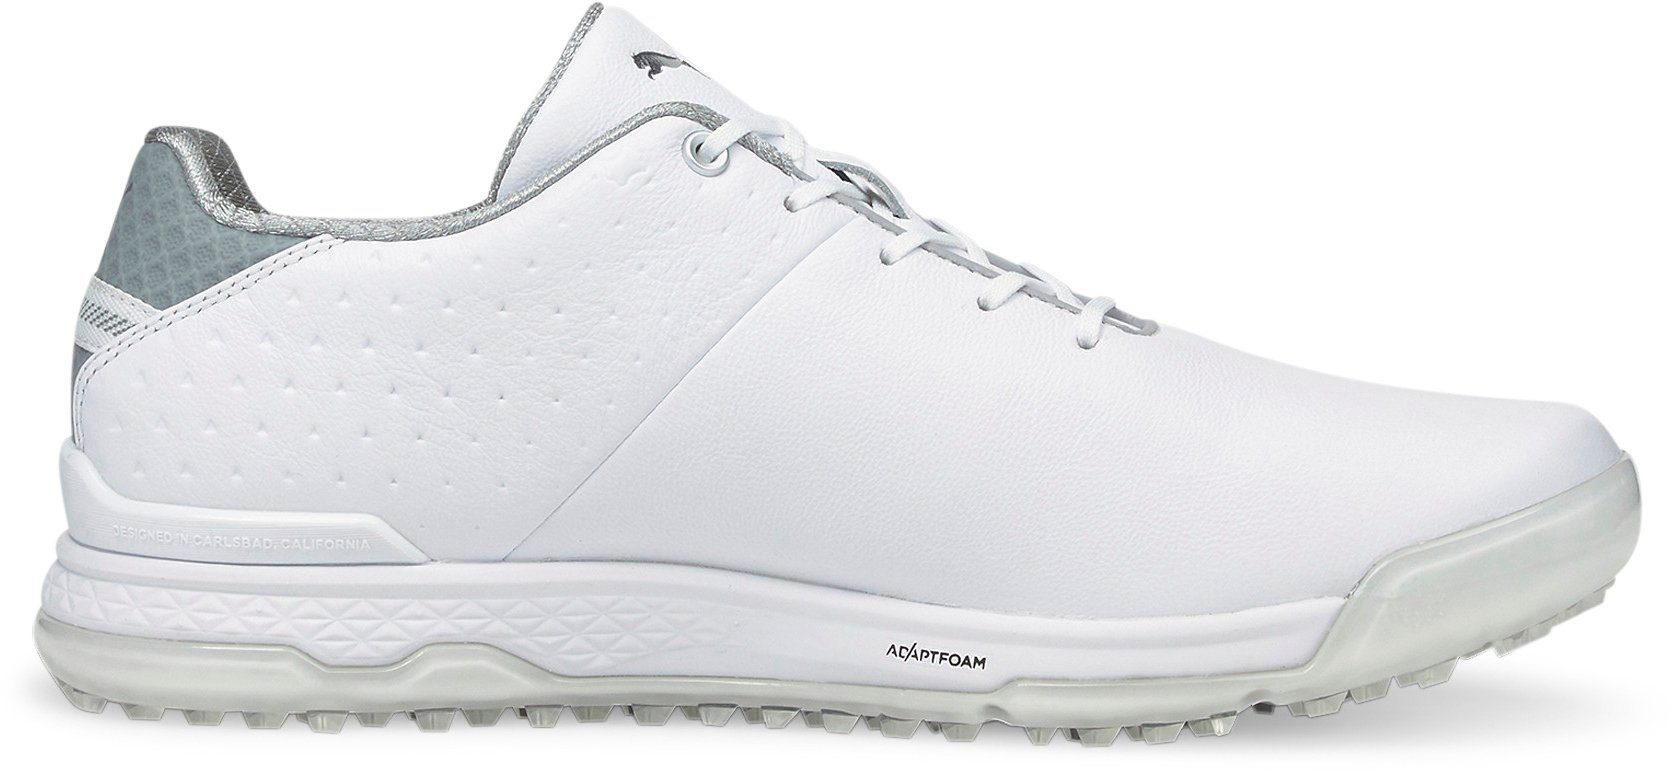 Schuhe Sportschuhe PUMA PROADAPT ALPHACAT Leather Golfschuh